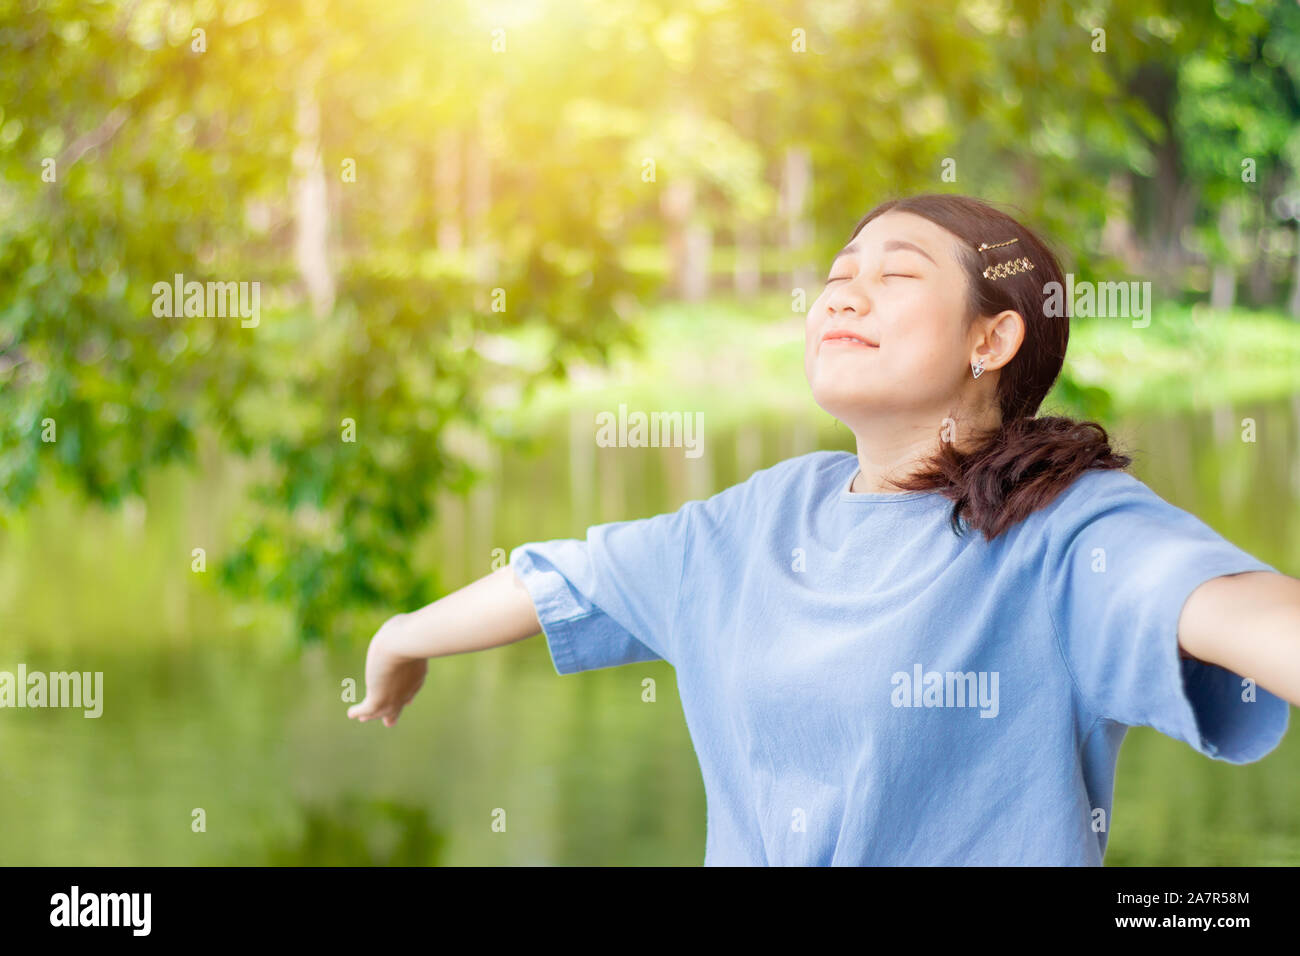 Girl Teen giovane aprire completamente i bracci di respirare fresca e pulita aria di ozono nel verde parco all'aperto Foto Stock